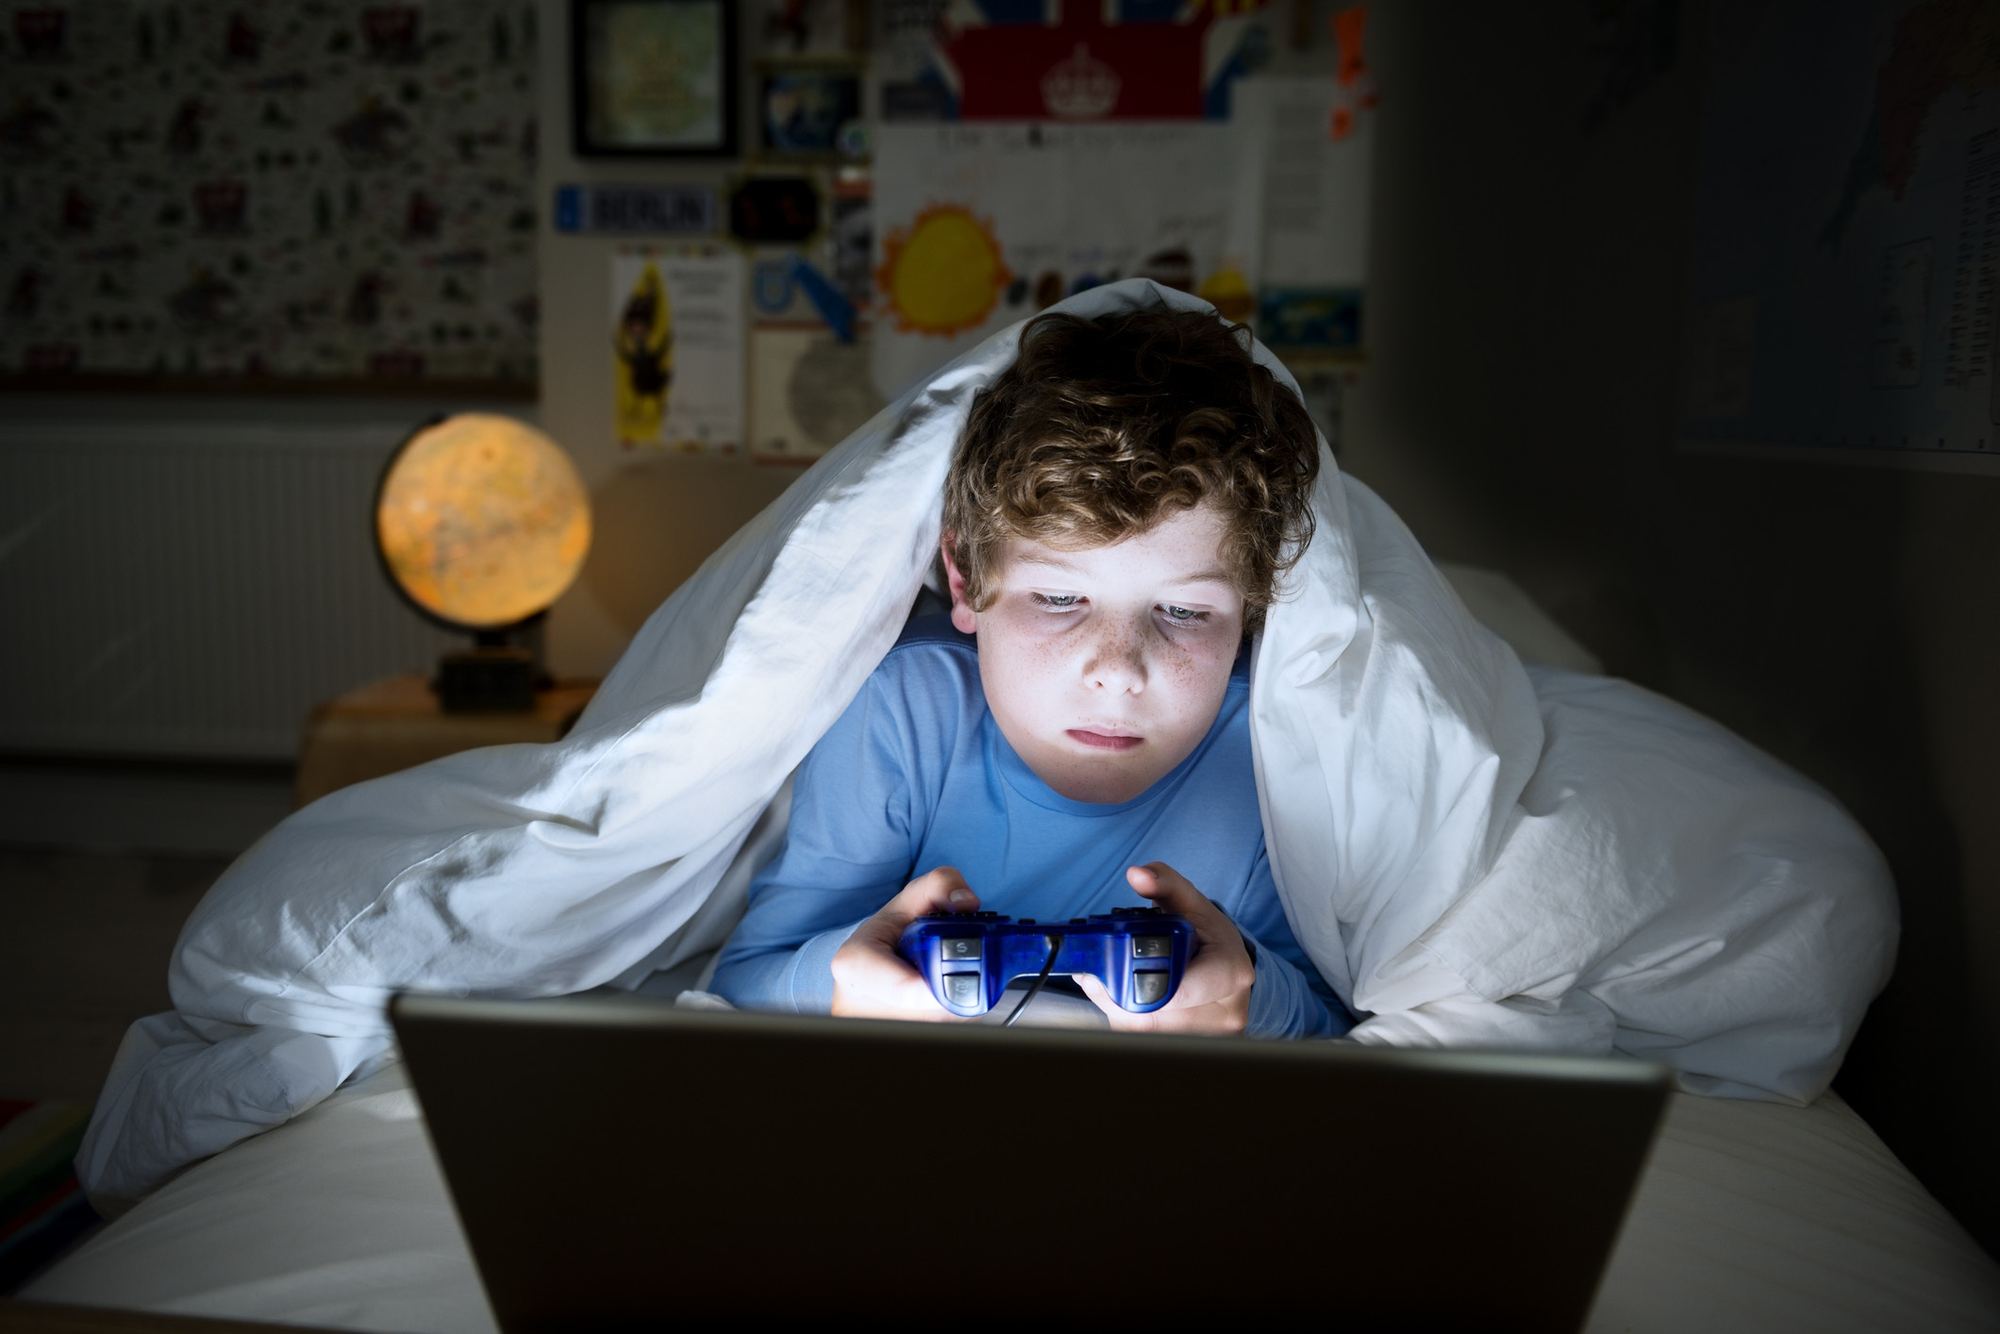 6 reasons to avoid gaming at night